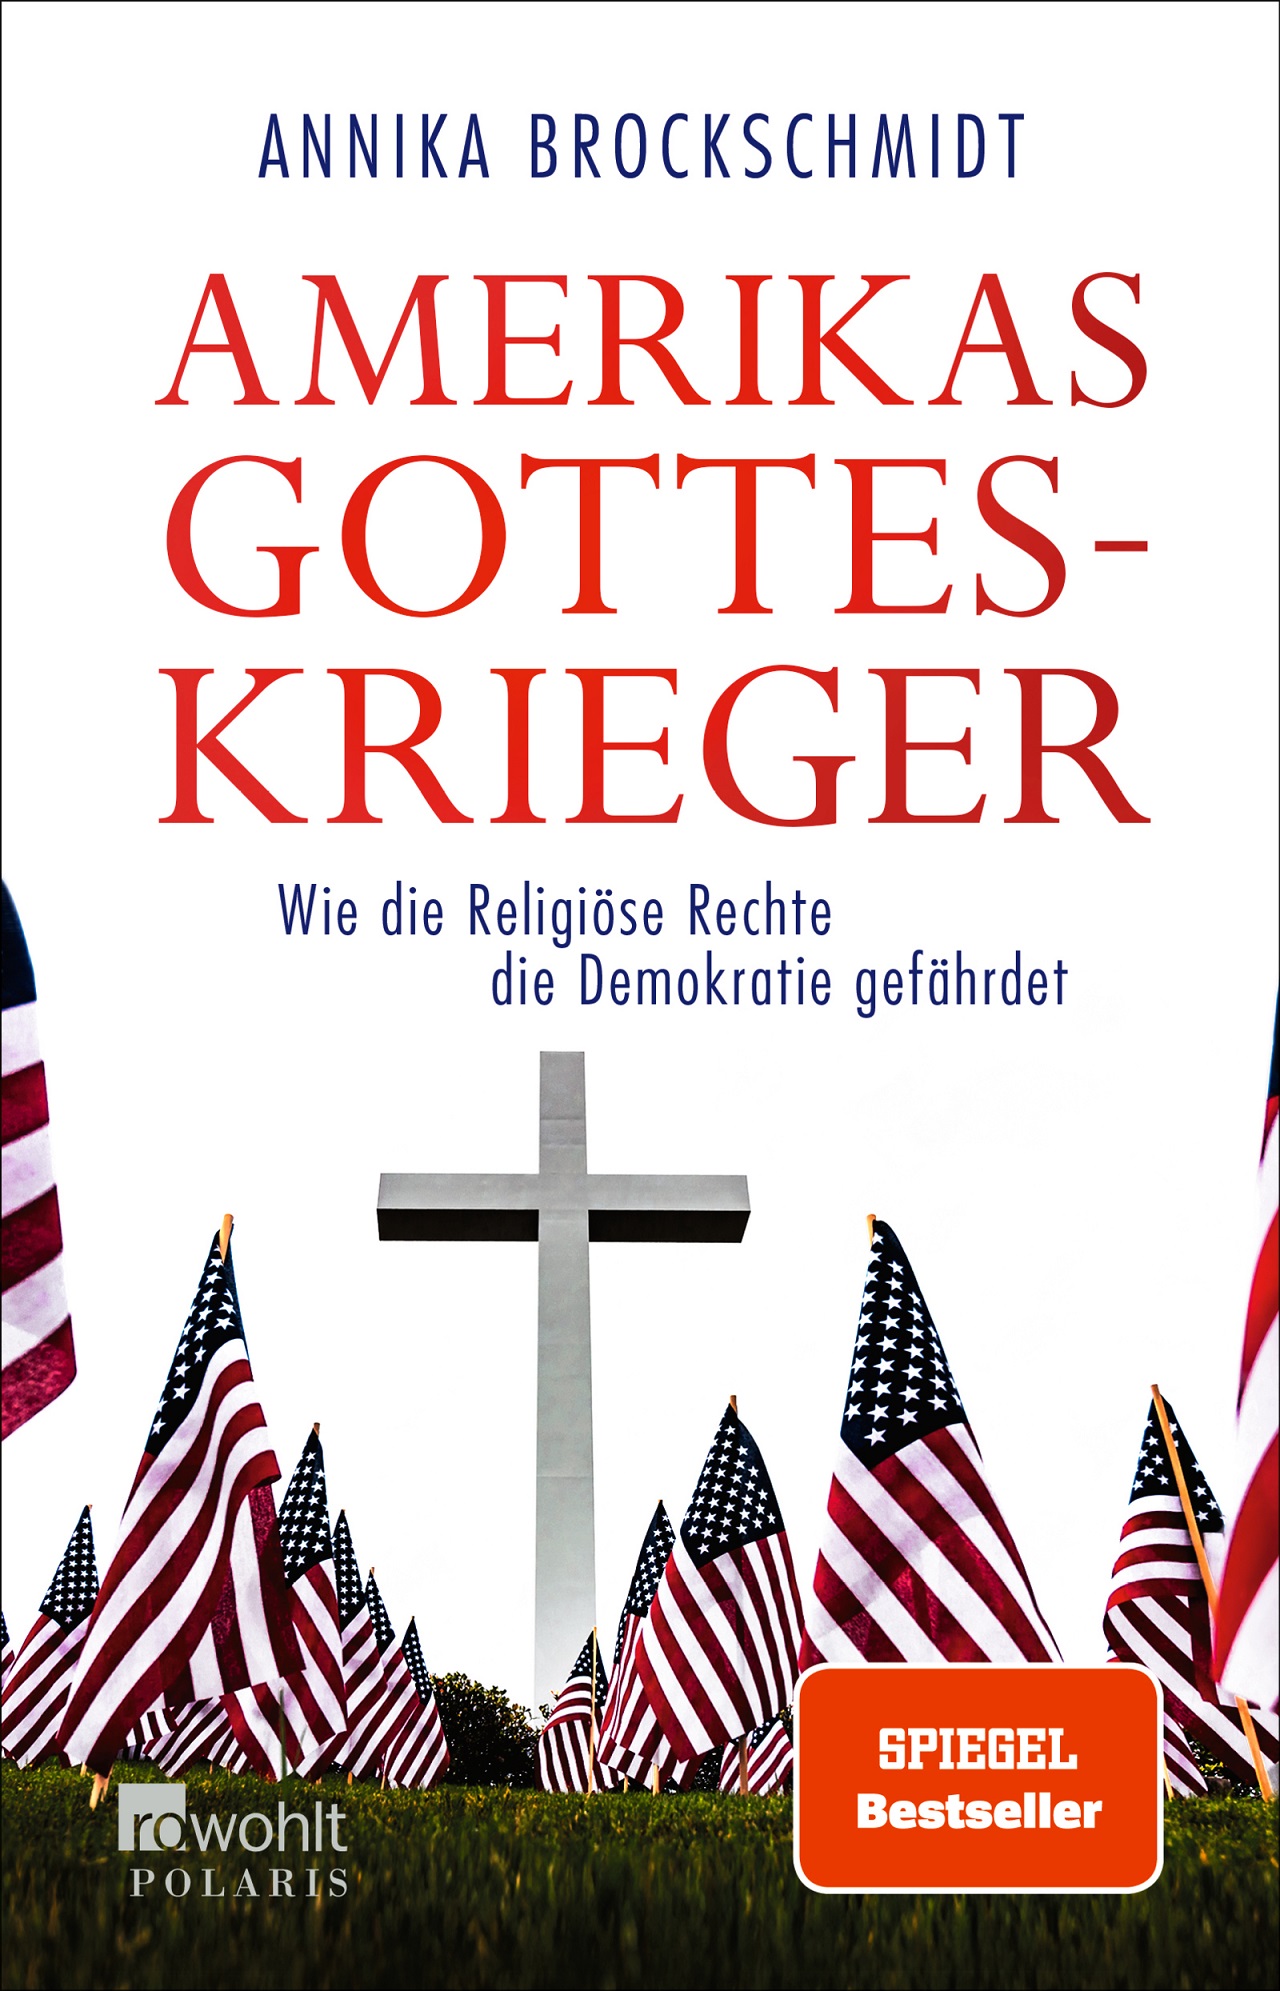 US-Fahnen und ein Kreuz auf dem Buchcover von "Amerikas Gotteskrieger" von Annika Brockschmidt.